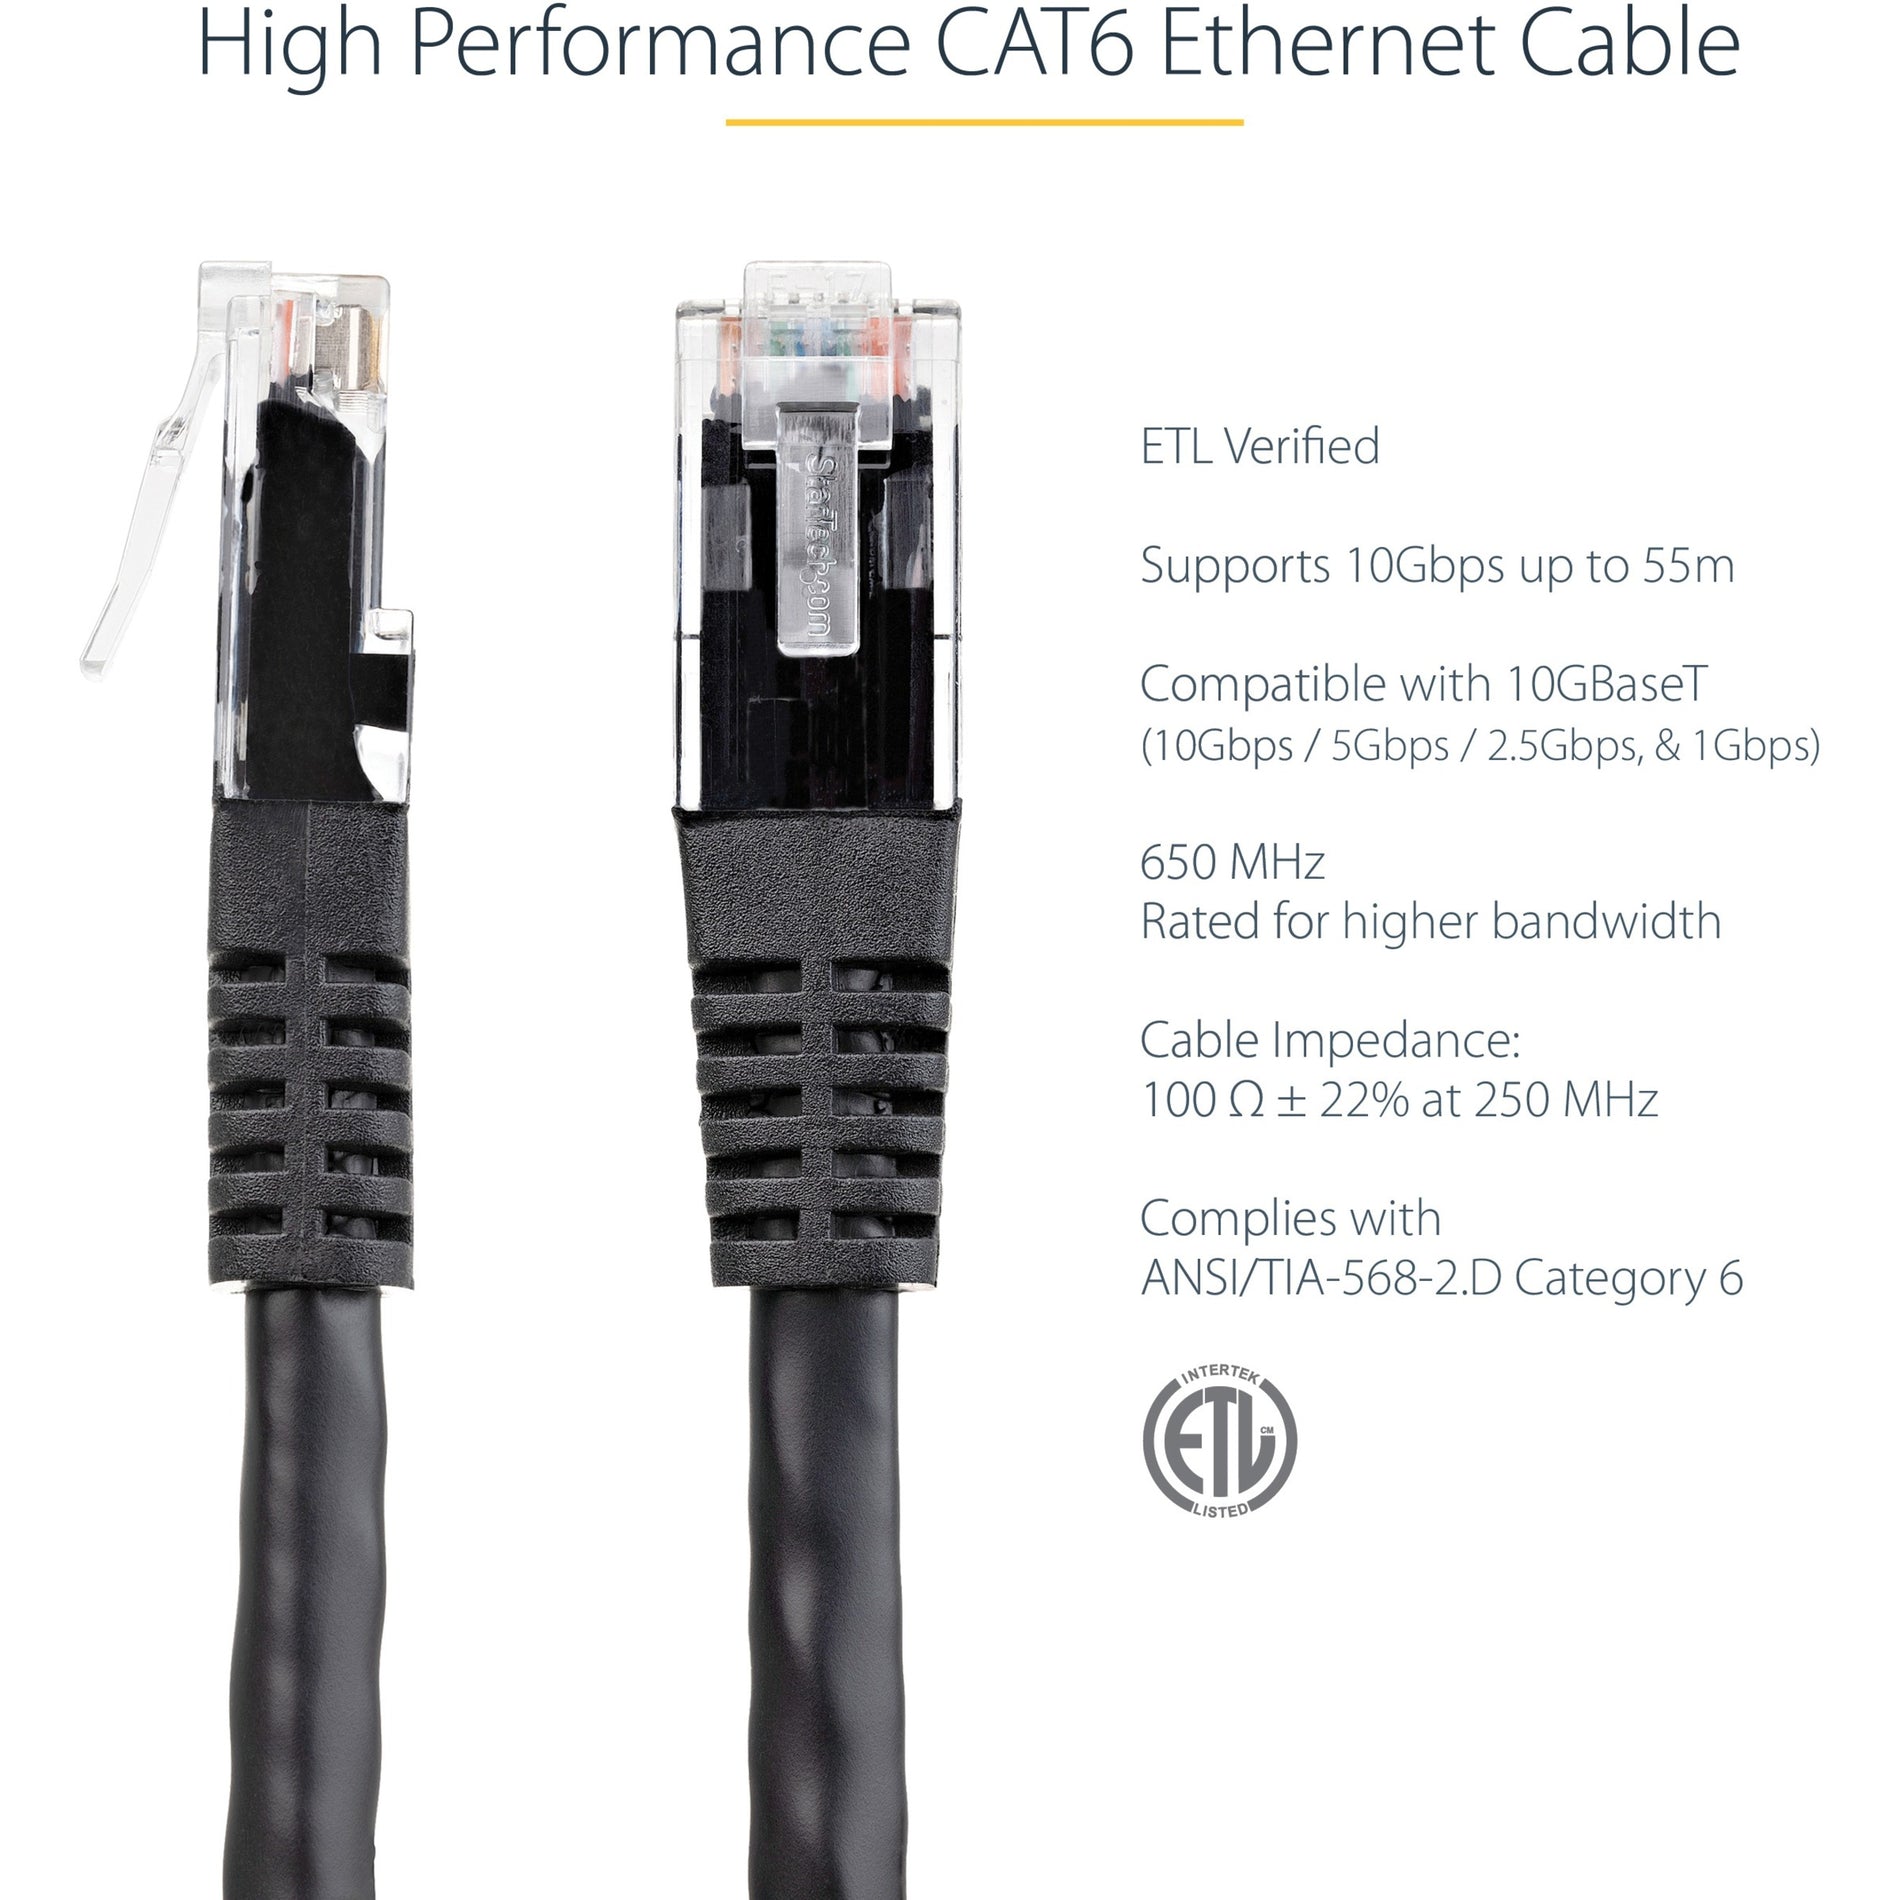 Marca: StarTech.com Cable de parche UTP Cat6 negro de 1ft verificado por ETL 10 Gbit/s PoE resistente al óxido resistente al desgaste resistente a las curvas